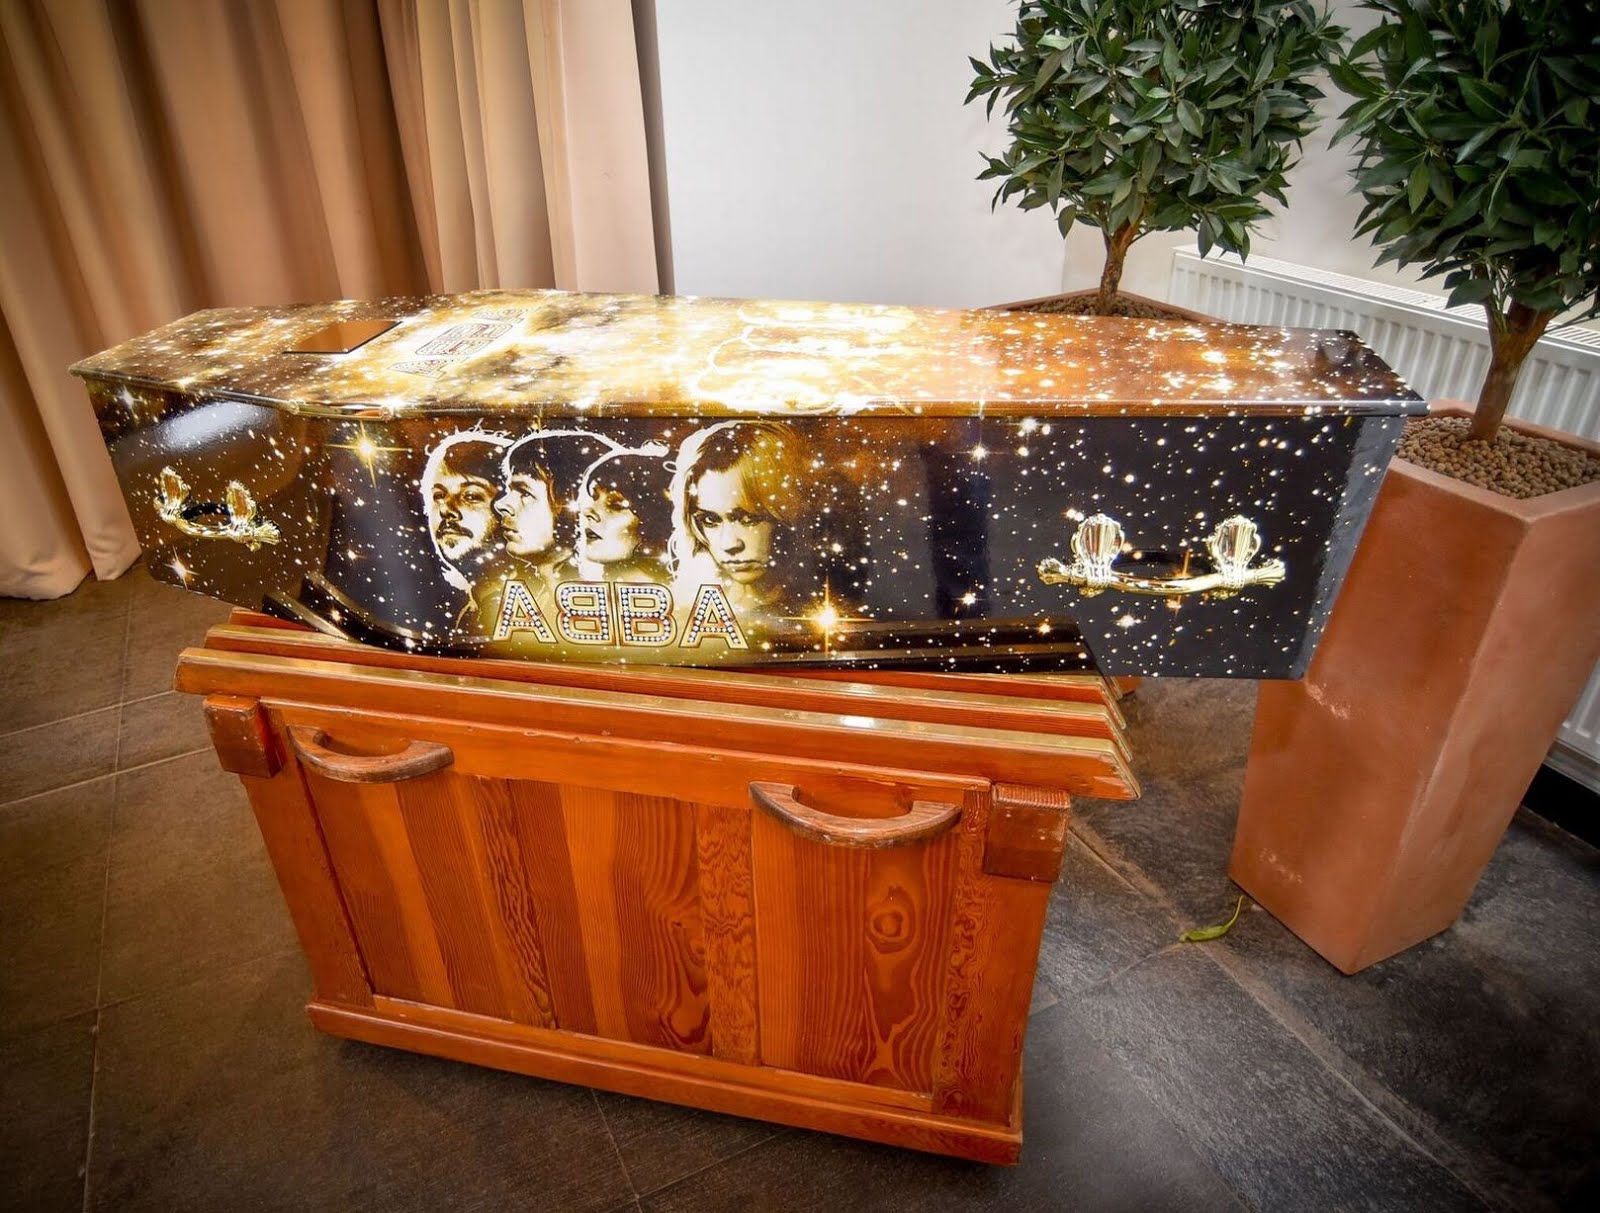 Even ABBA has a casket